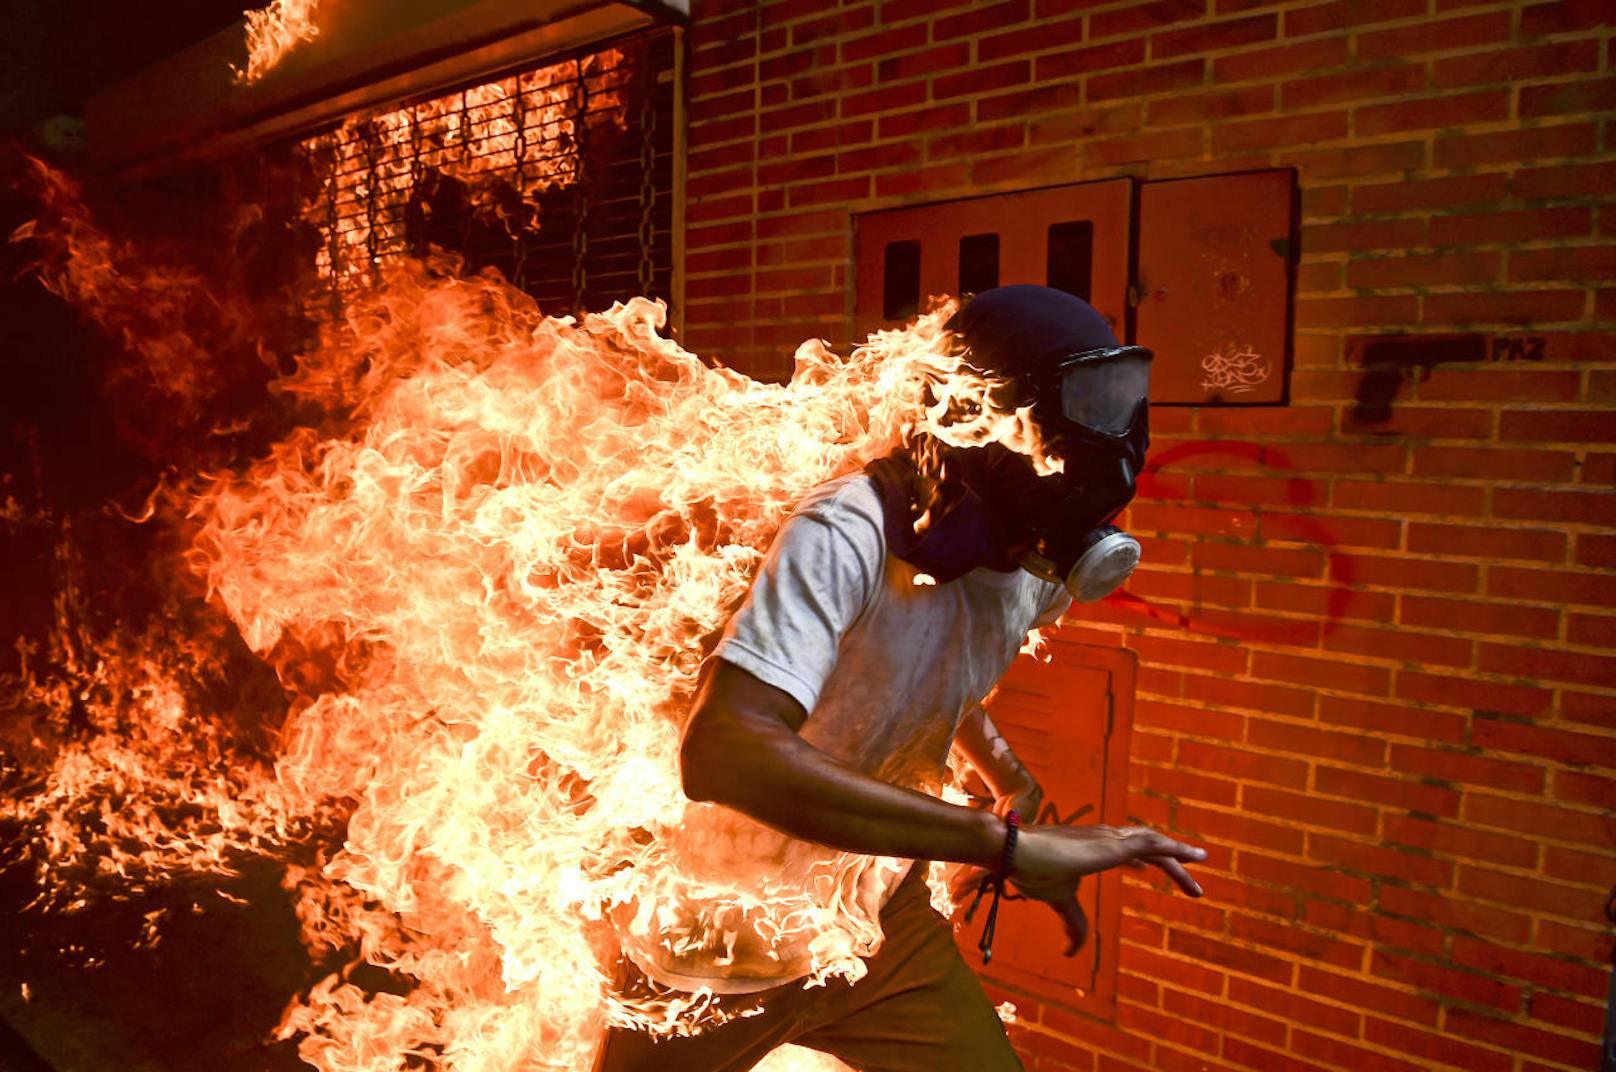 Das Siegerbild: Der venezolanische Demonstrant Victor Salazar (28) brennt lichterloh. Er überlebte schwer verletzt. AFP-Fotografen Ronaldo Schemidt hatte auf den Auslöser gedrückt.